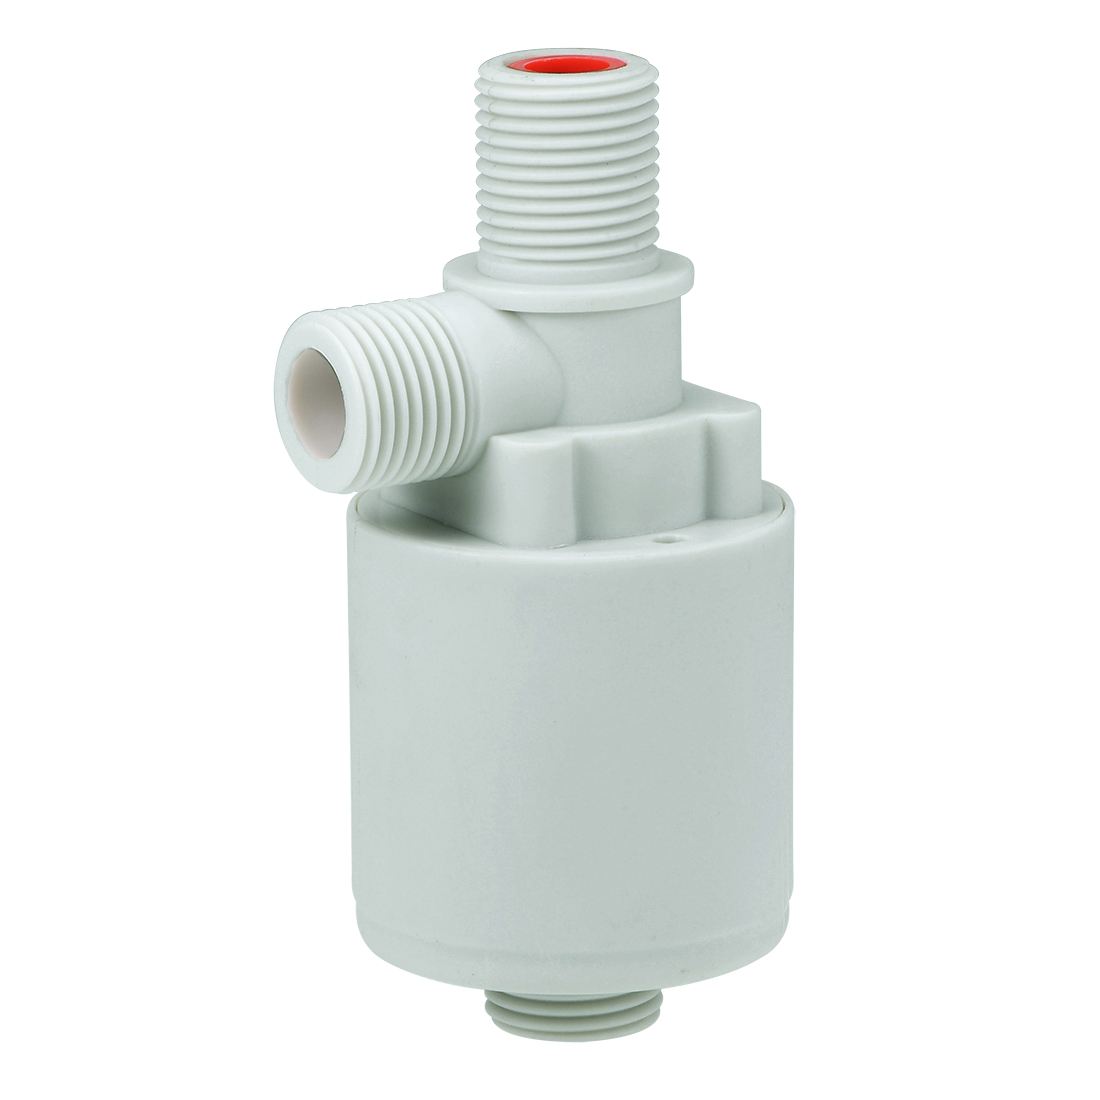 Uxcell Float Kogelkraan G1/2 Draad Plastic Verticale Exterieur Water Liquid Level Sensor Automatische Met Filter